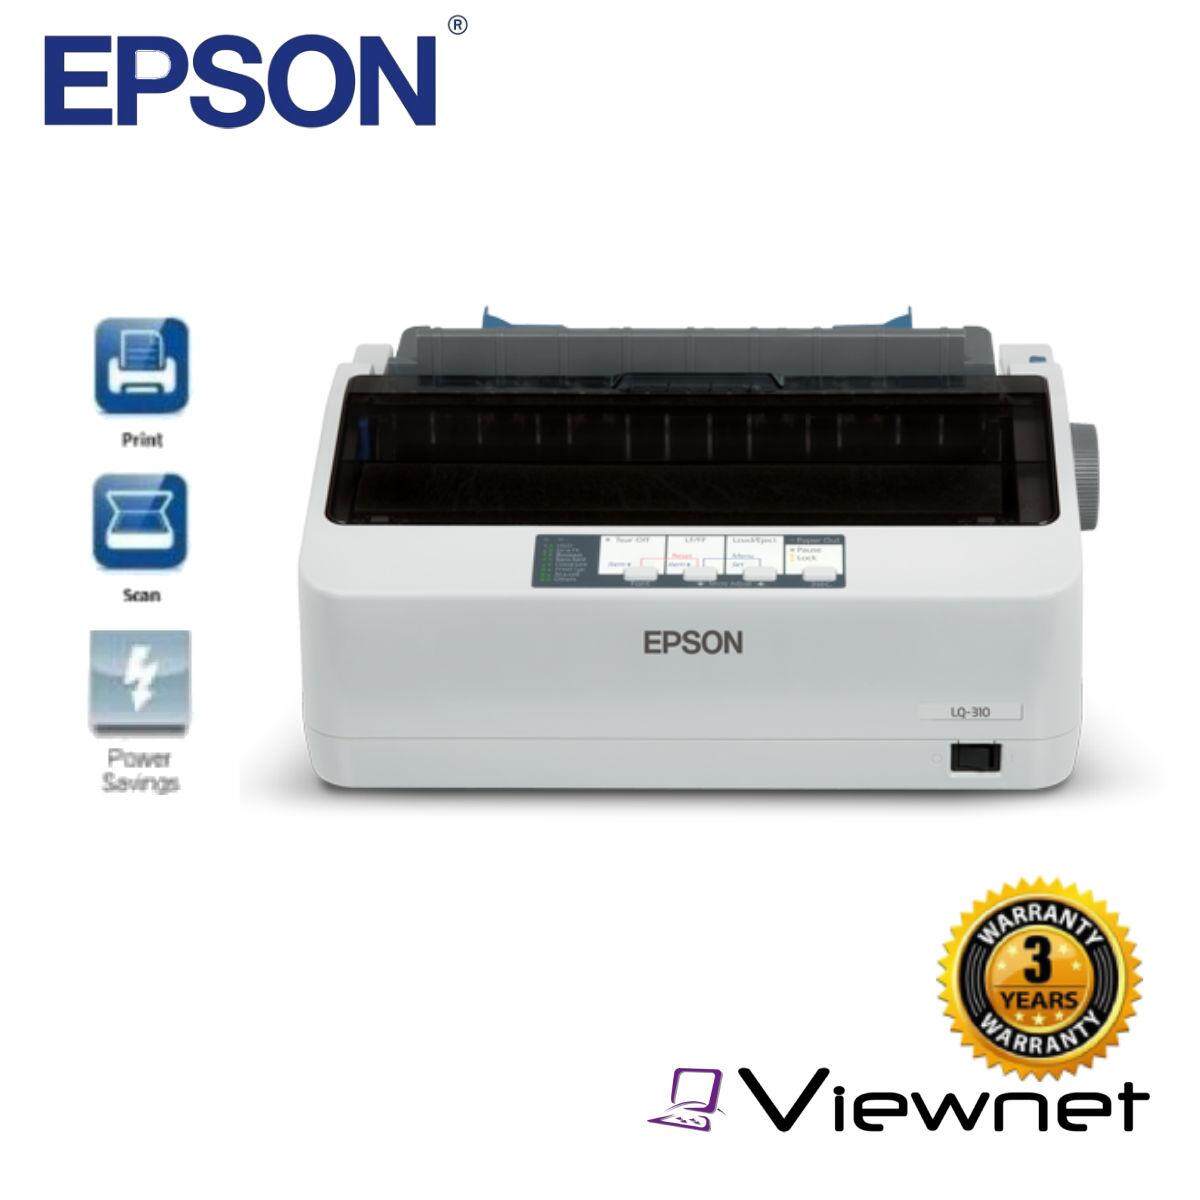 EPSON LQ-310 Dot Matrix Printer